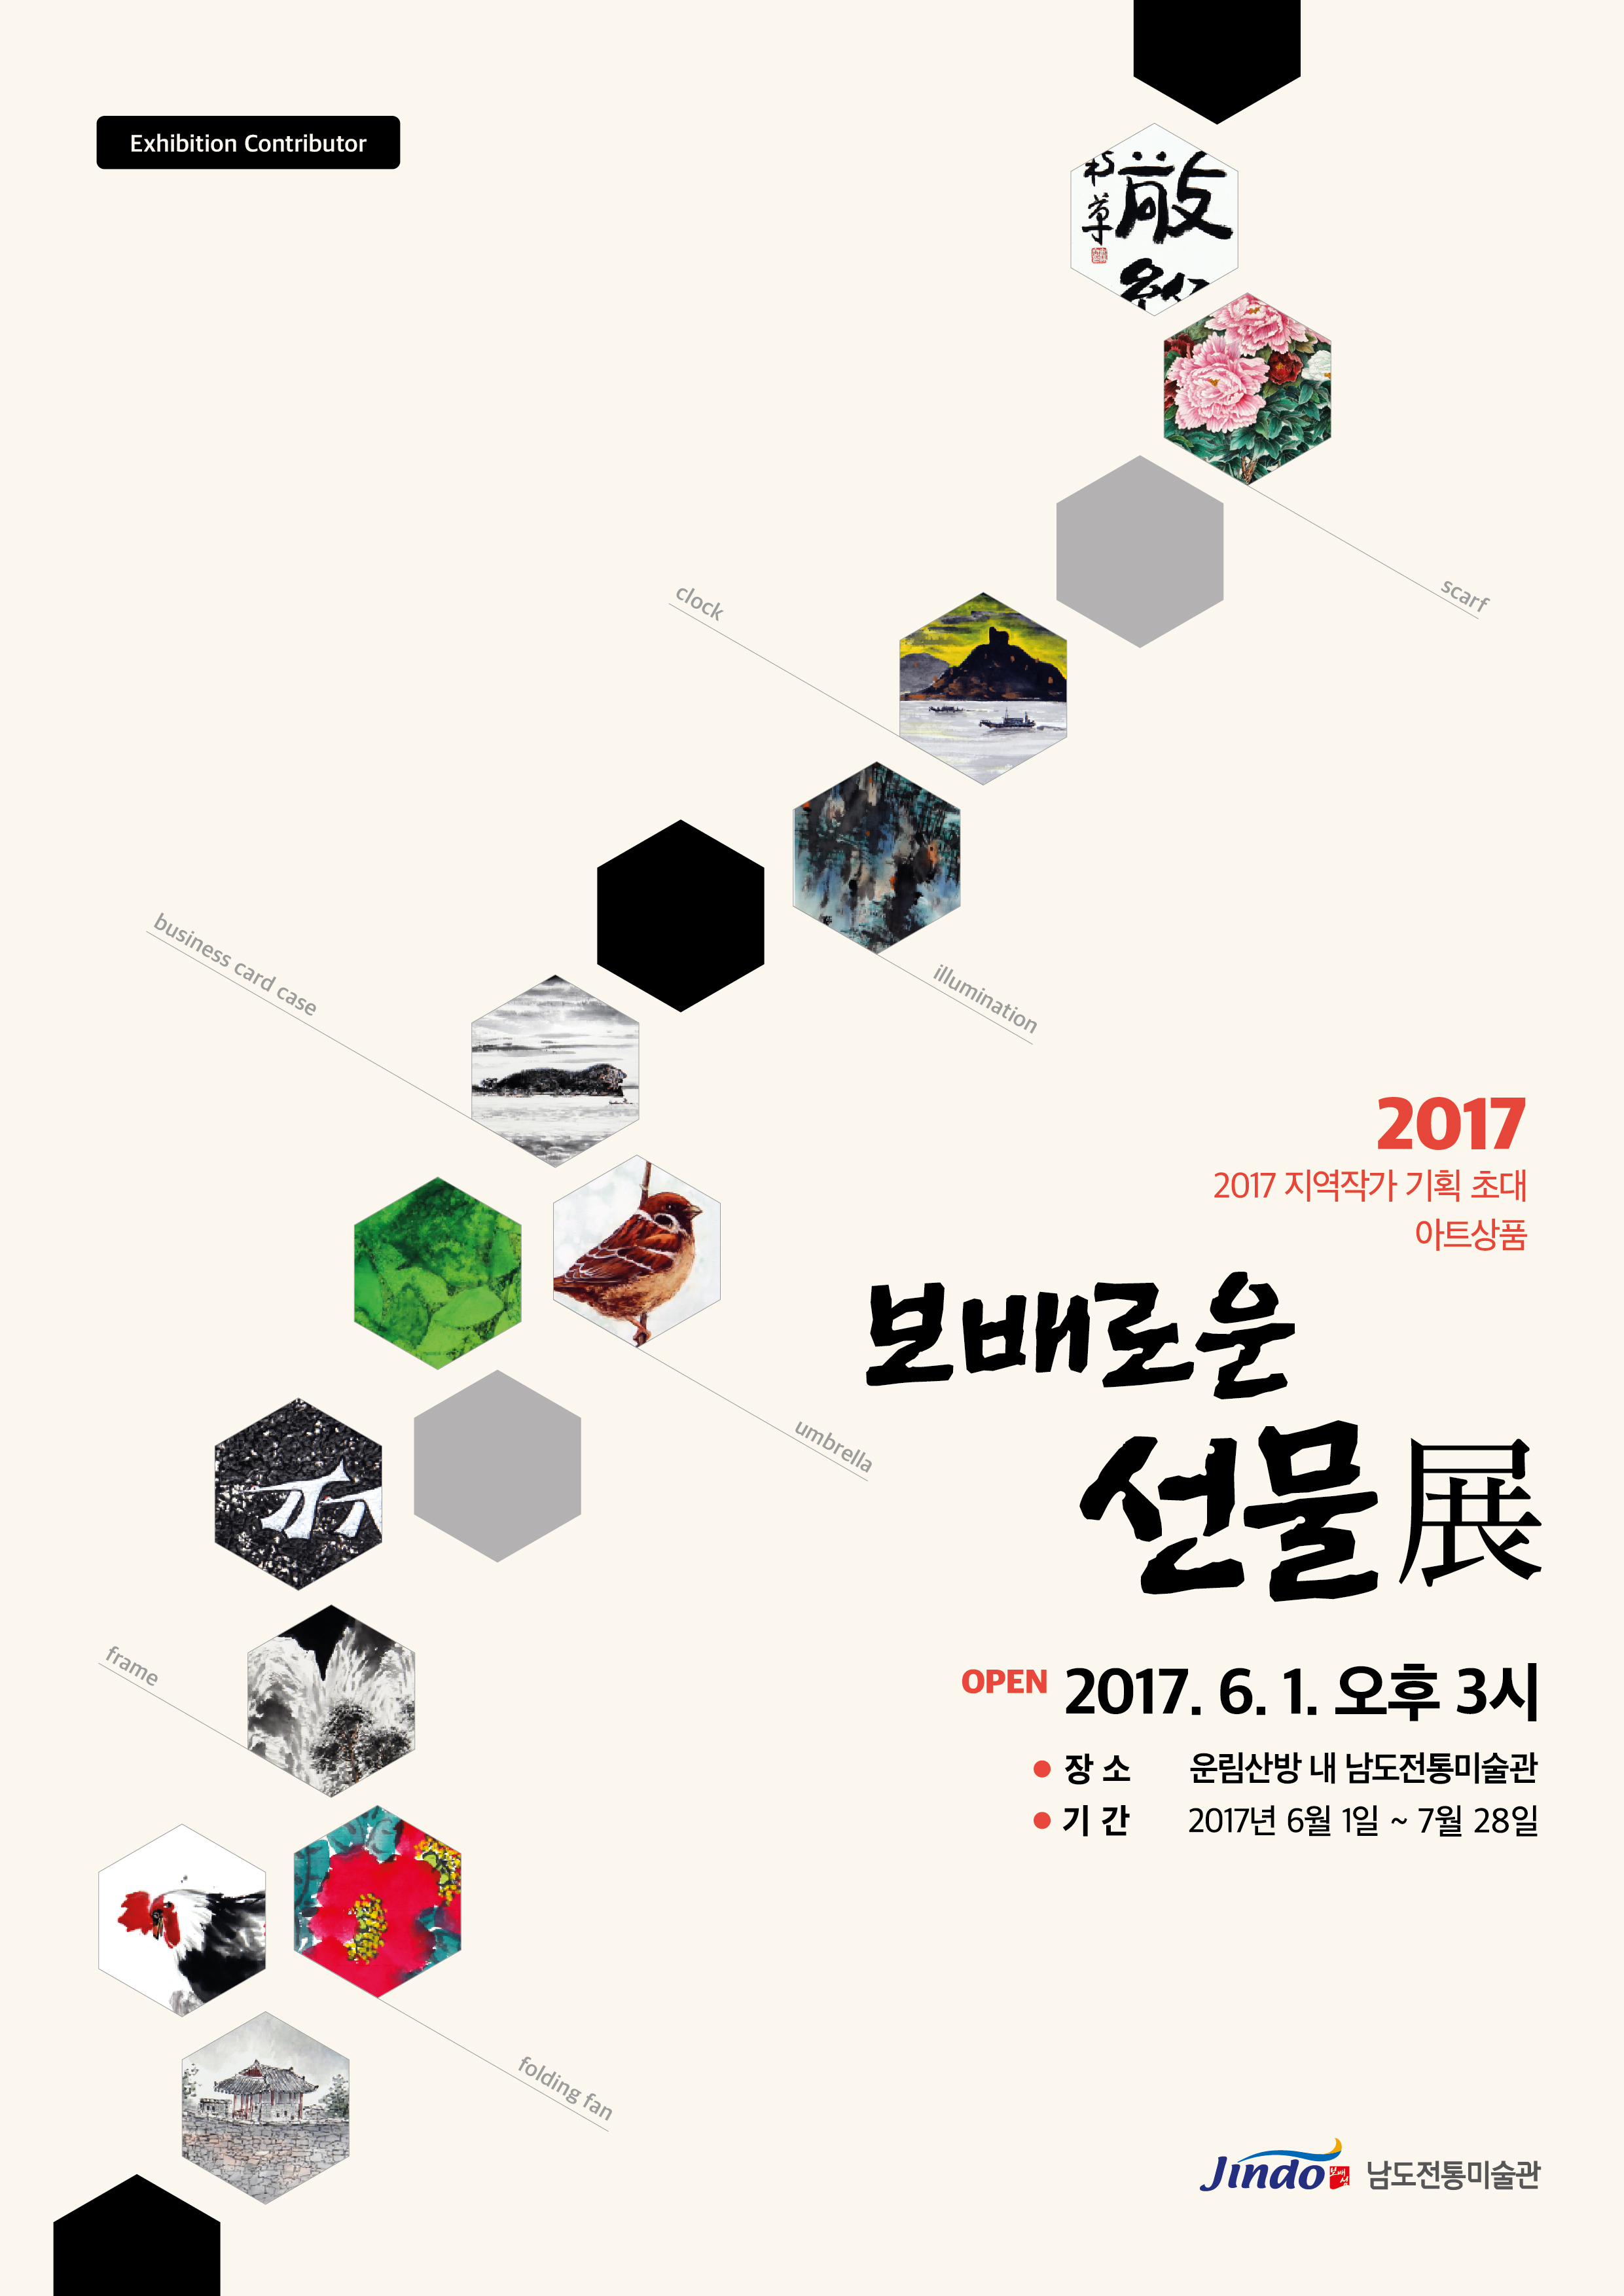 진도 남도전통미술관, 2017 지역작가 기획초대 아트상품 “보배로운 선물전” 안내 첨부#1